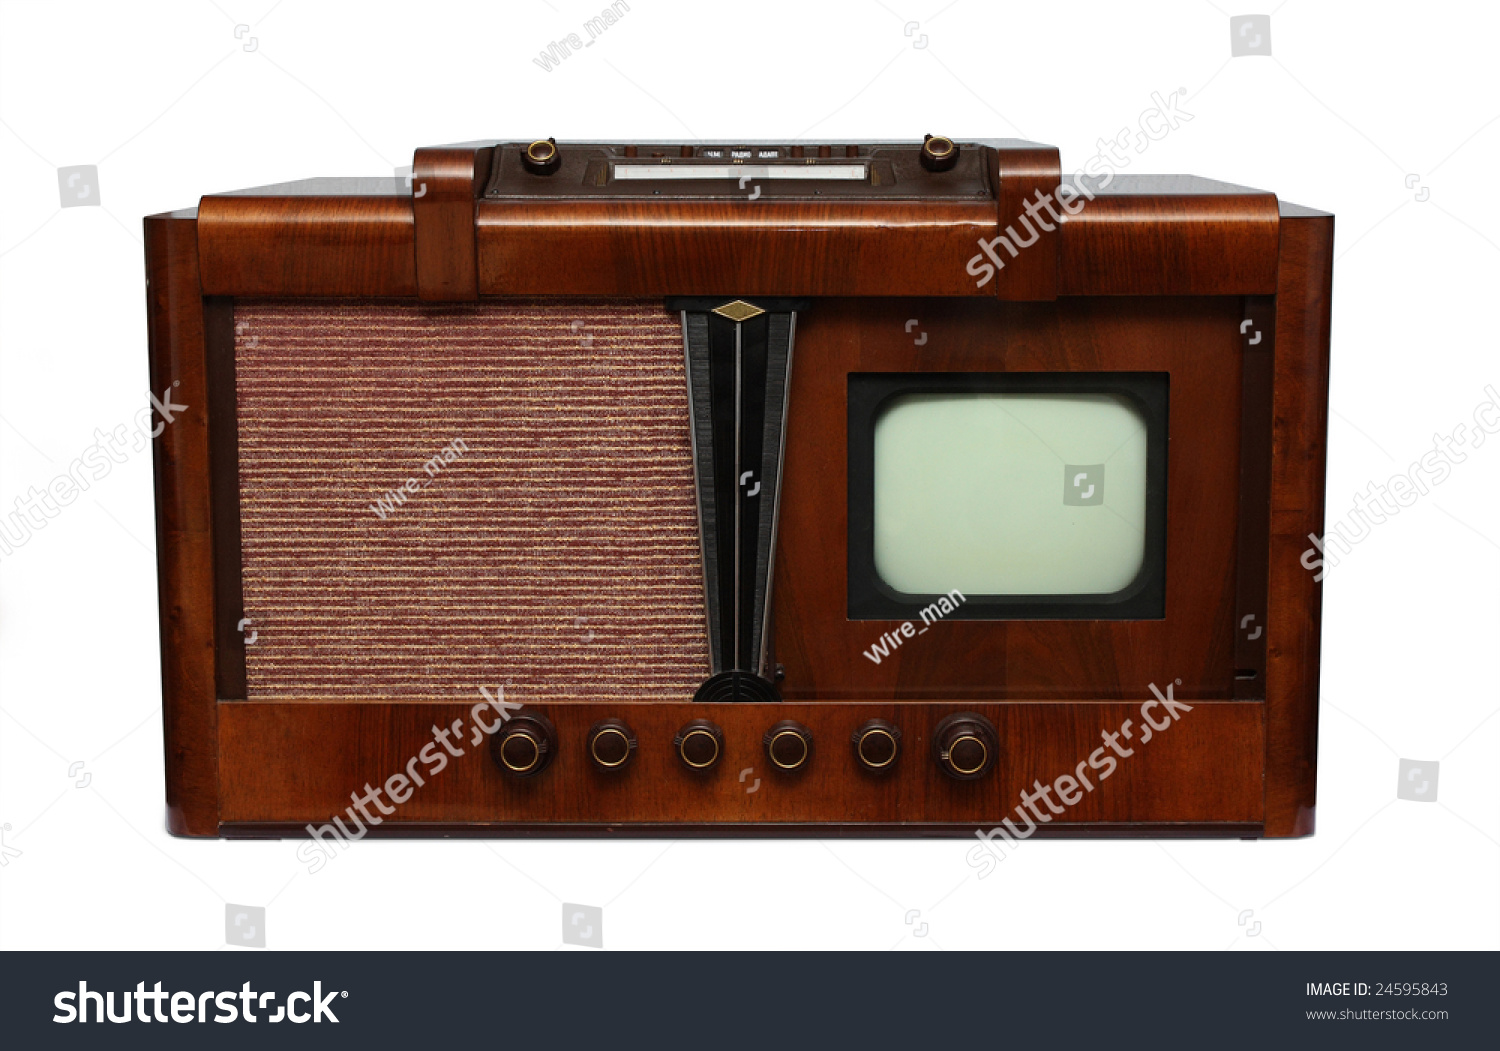 Телевизор 5 букв. Первый телевизор. Телевизор 1930 года. Механический телевизор. Самый первый телевизор.